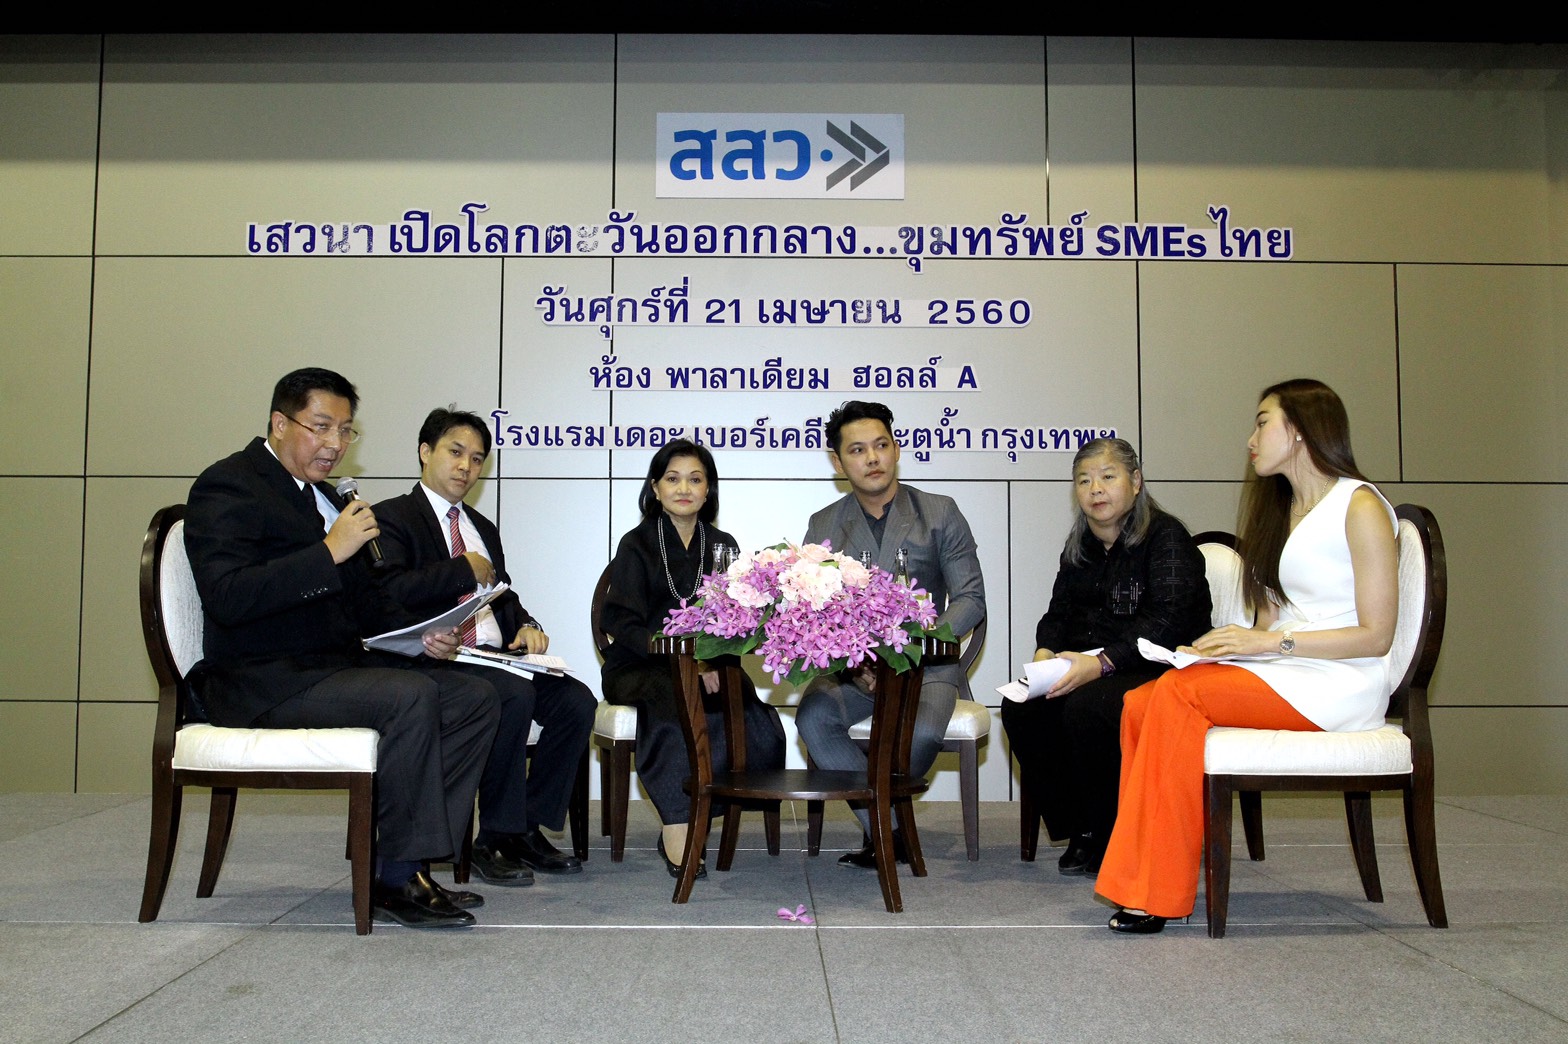 Thailand News - 23-04-17 4 Thai SMEs eye Omani market